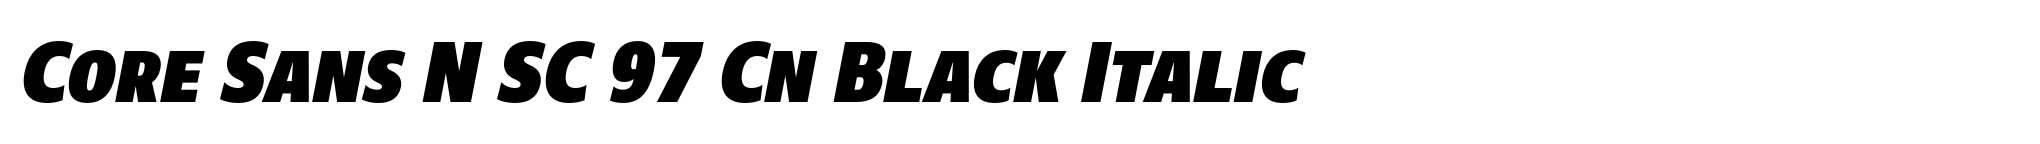 Core Sans N SC 97 Cn Black Italic image